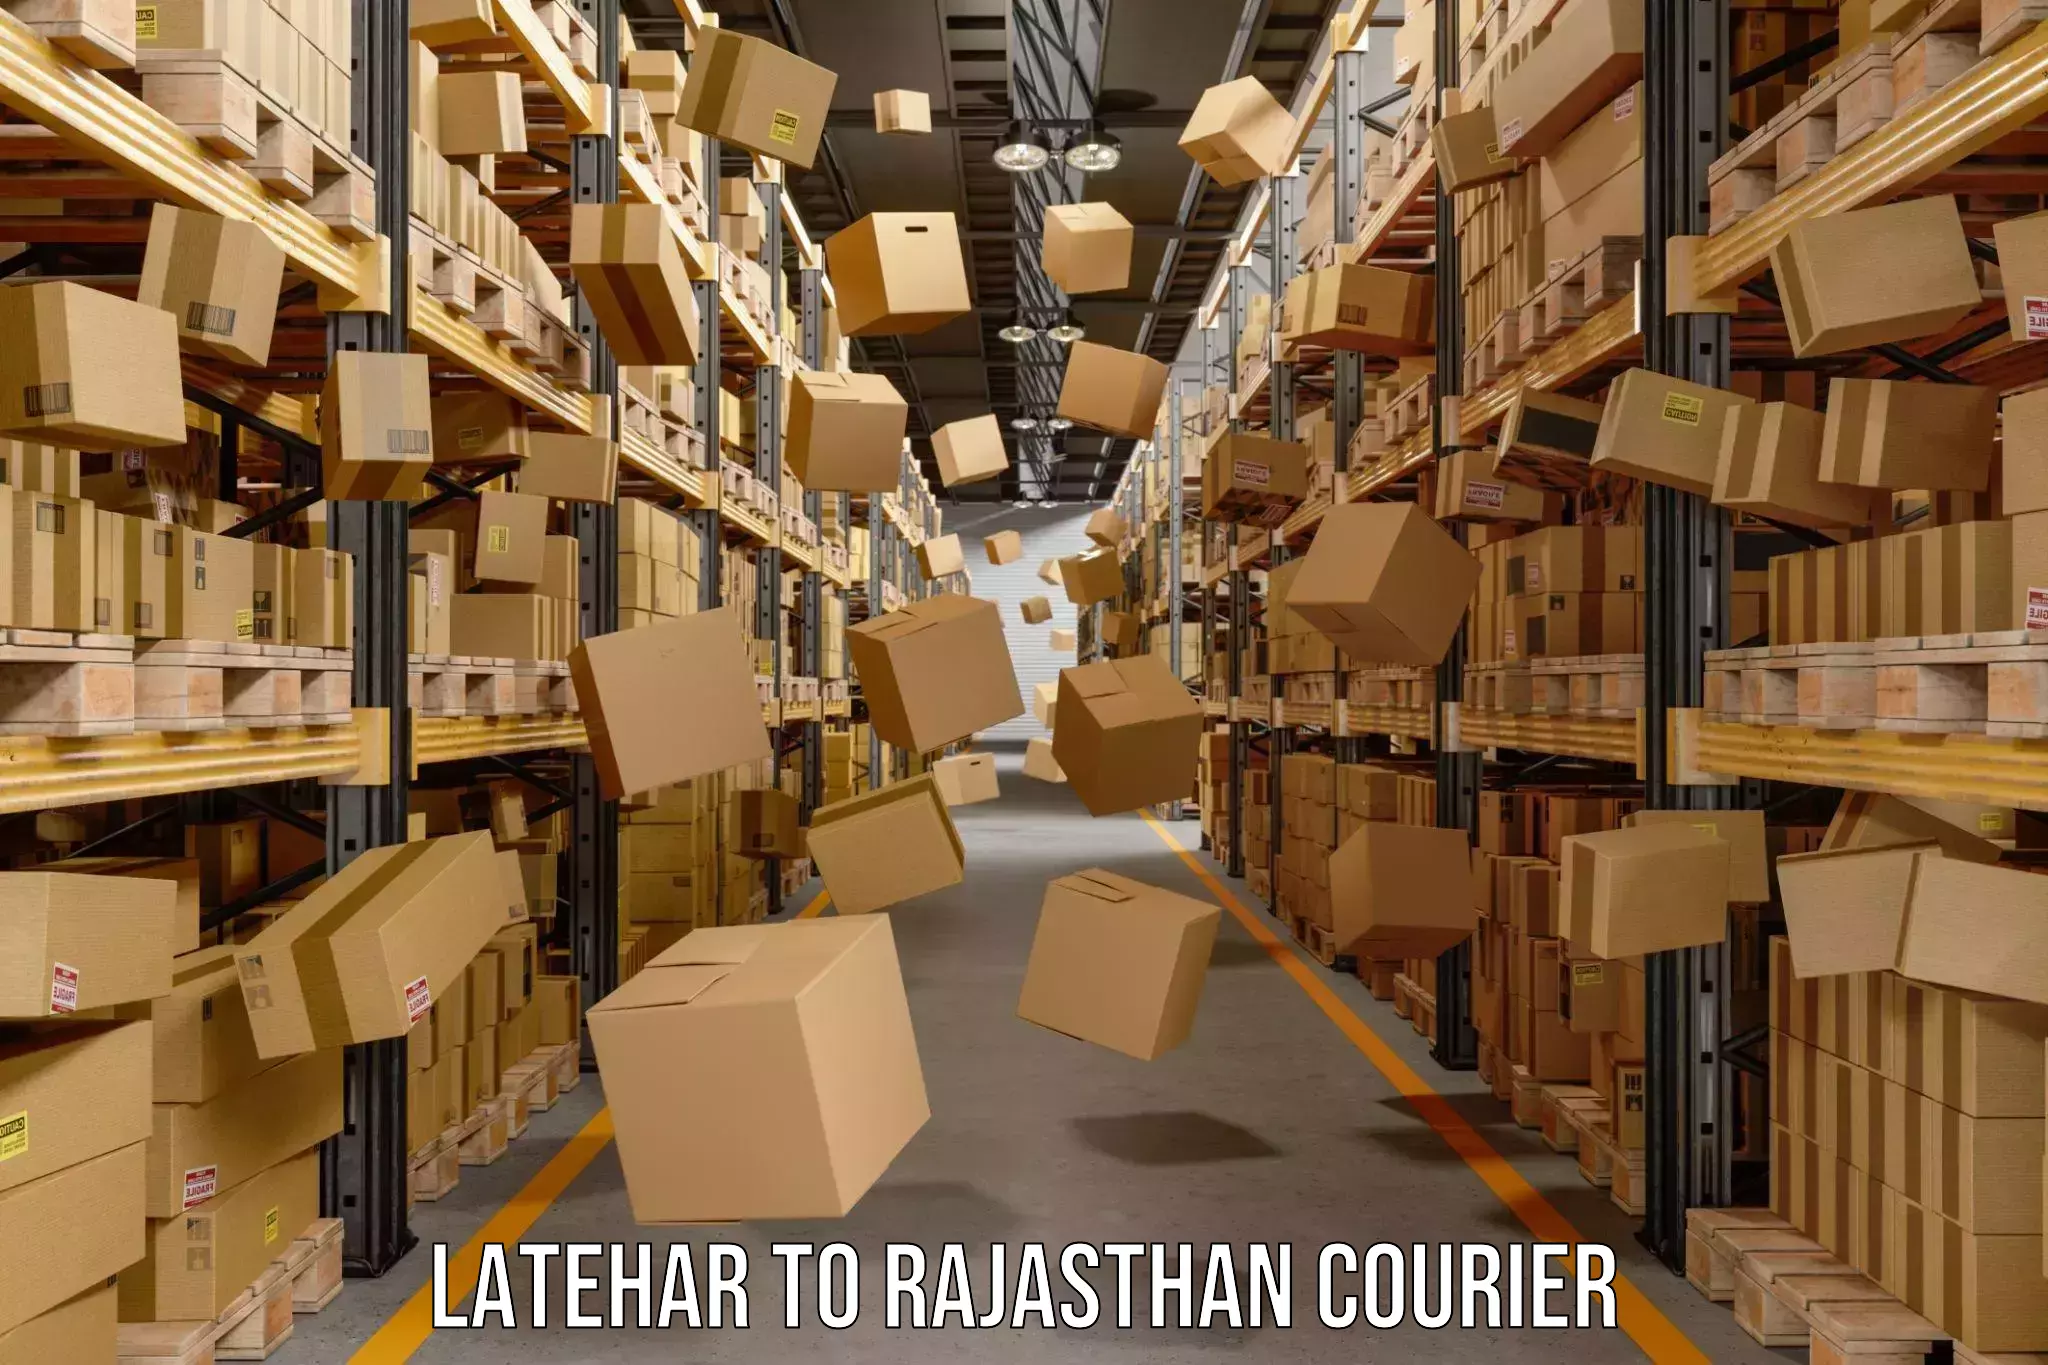 Courier service innovation Latehar to Khandela Sikar